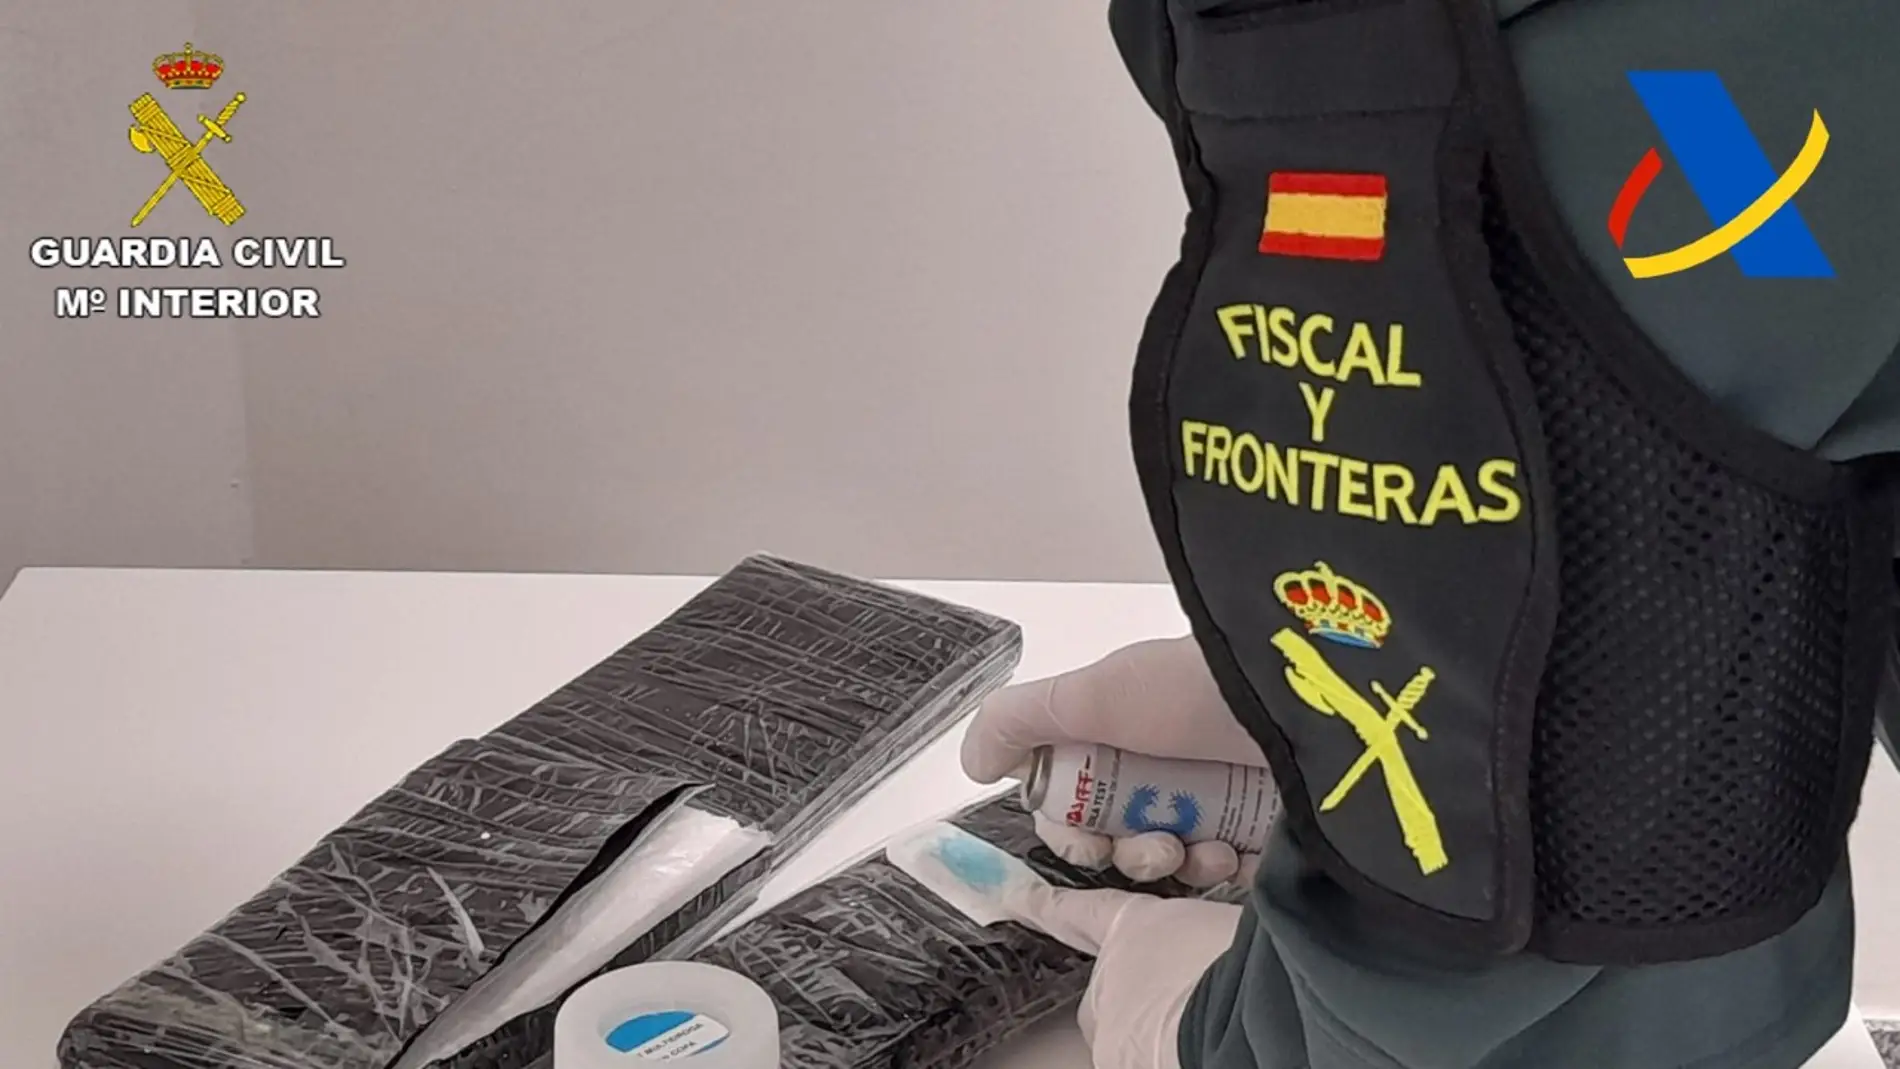 Parte de la cocaína descubierta en la maleta por la Guardia Civil del Aeropuerto Alicante-Elche.